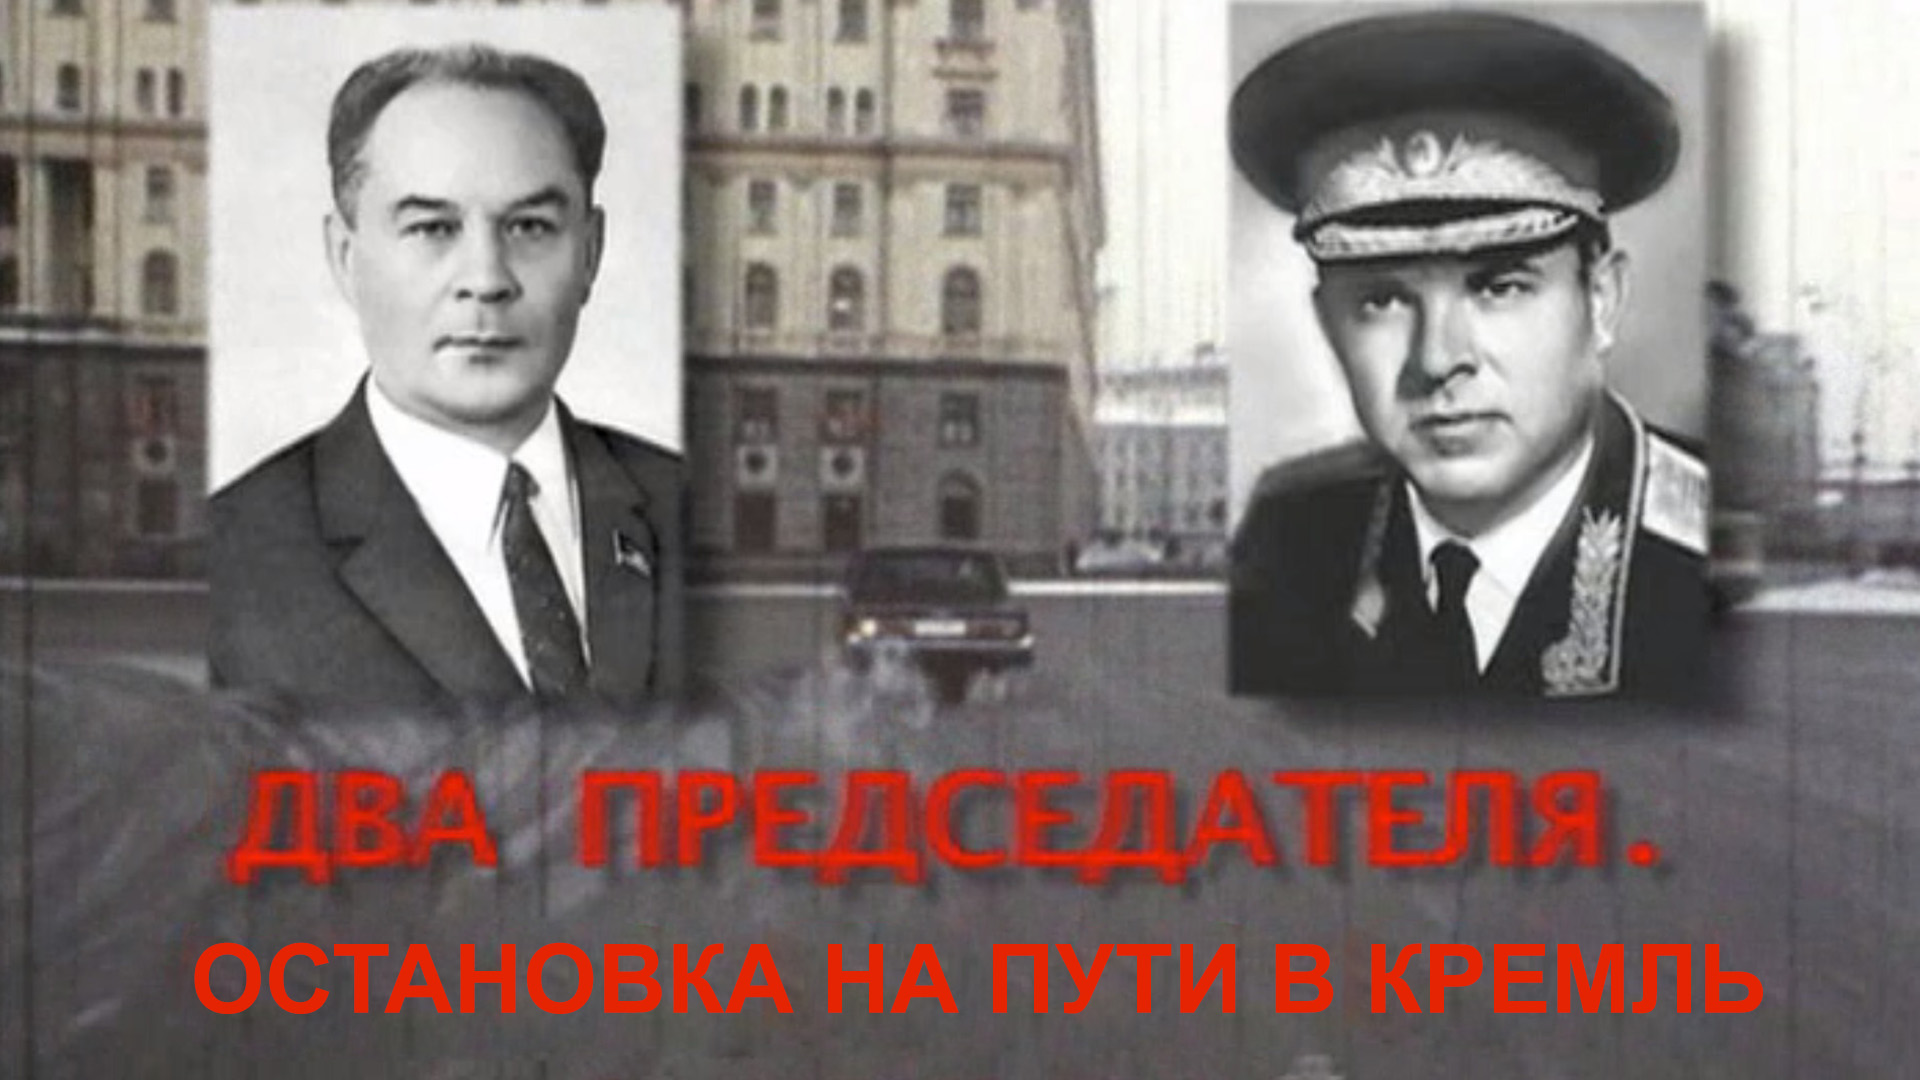 Два председателя. Остановка на пути в Кремль